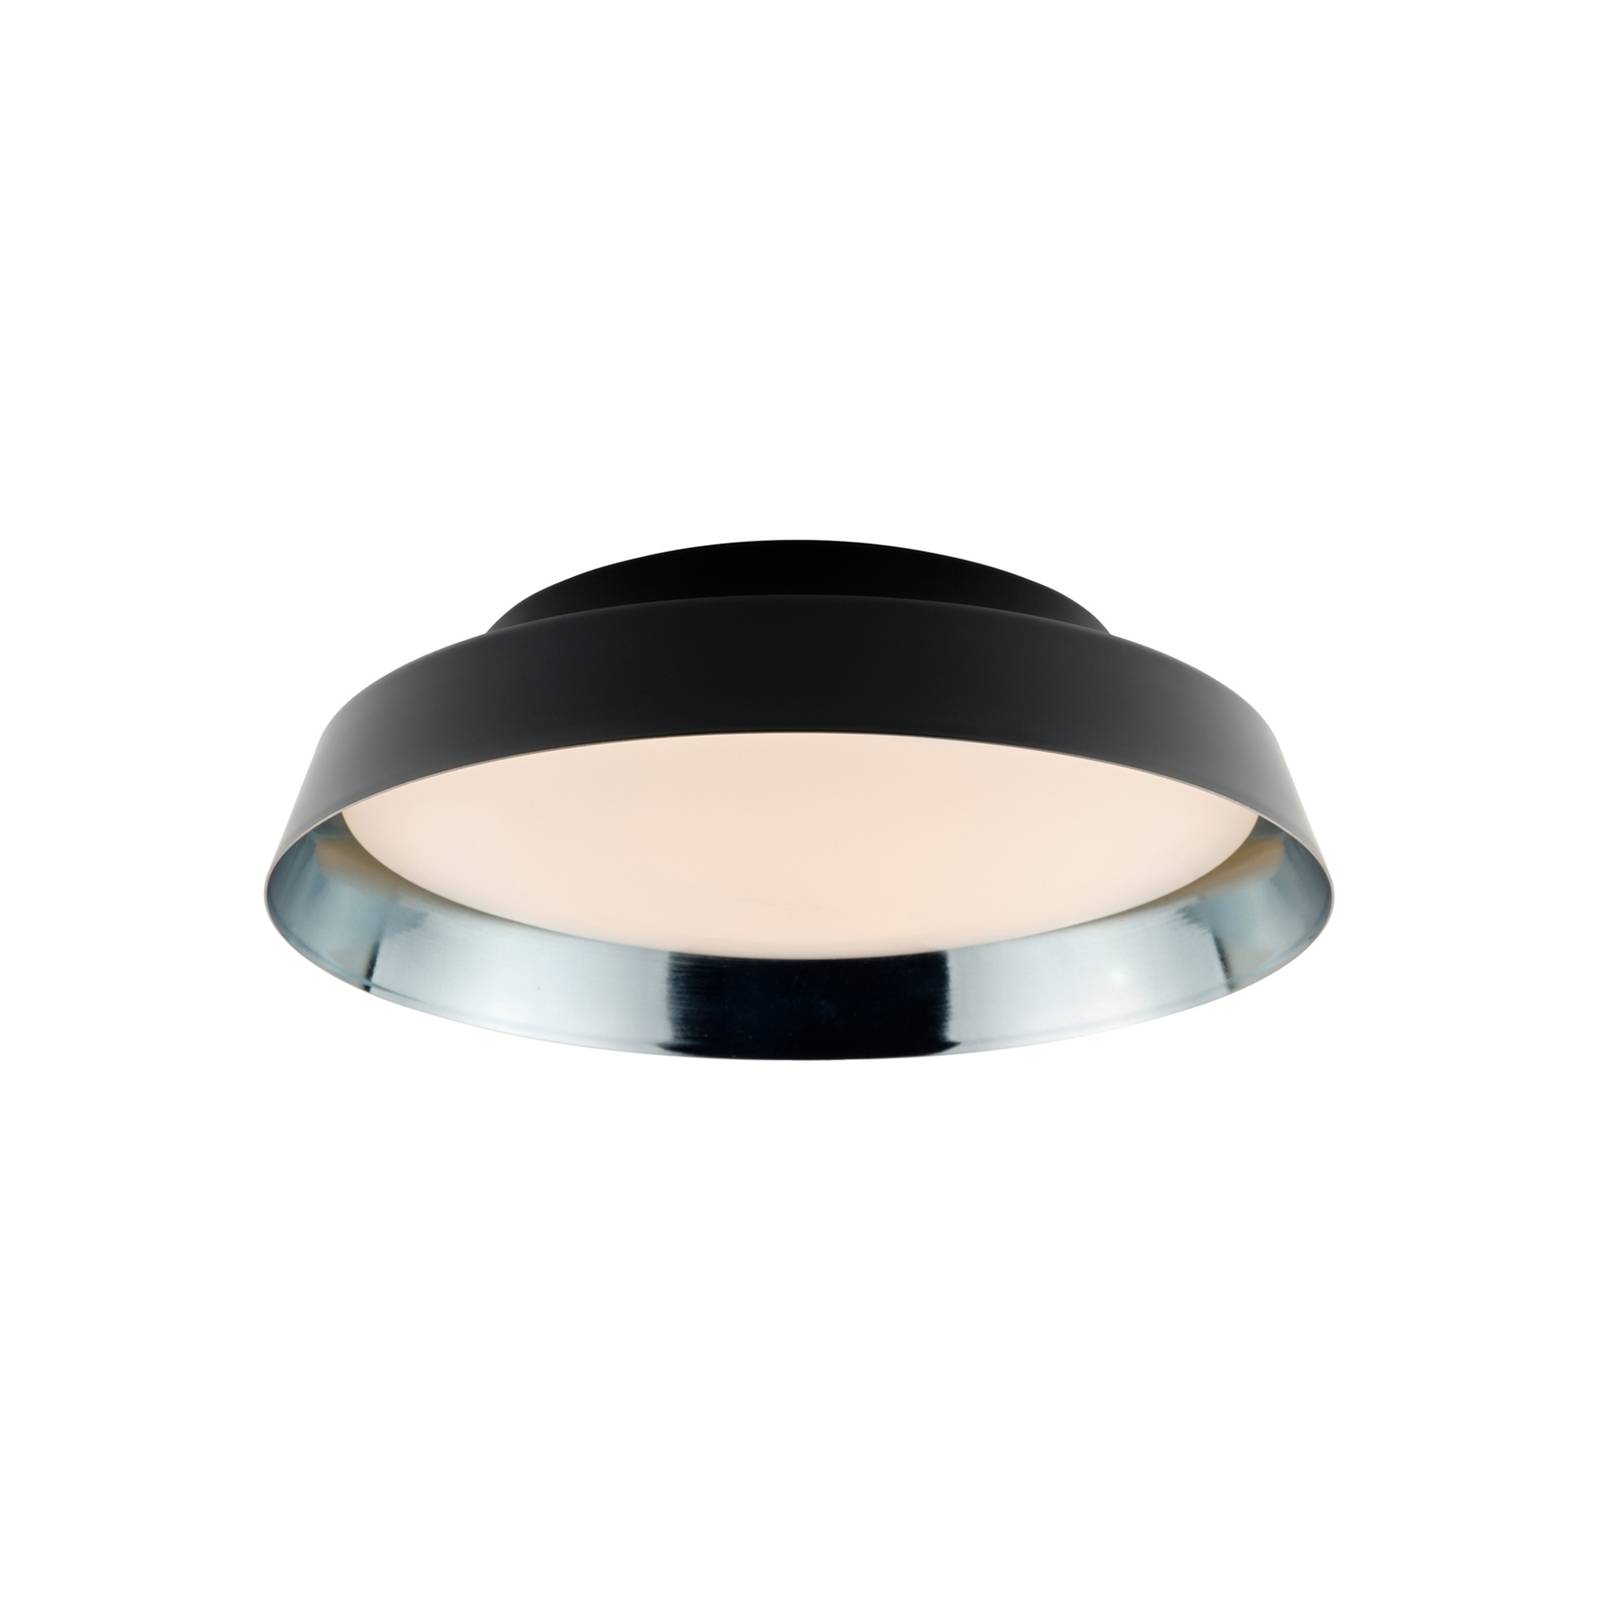 Carpyen LED-Außendeckenlampe Boop! Ø37cm schwarz/blau-grau